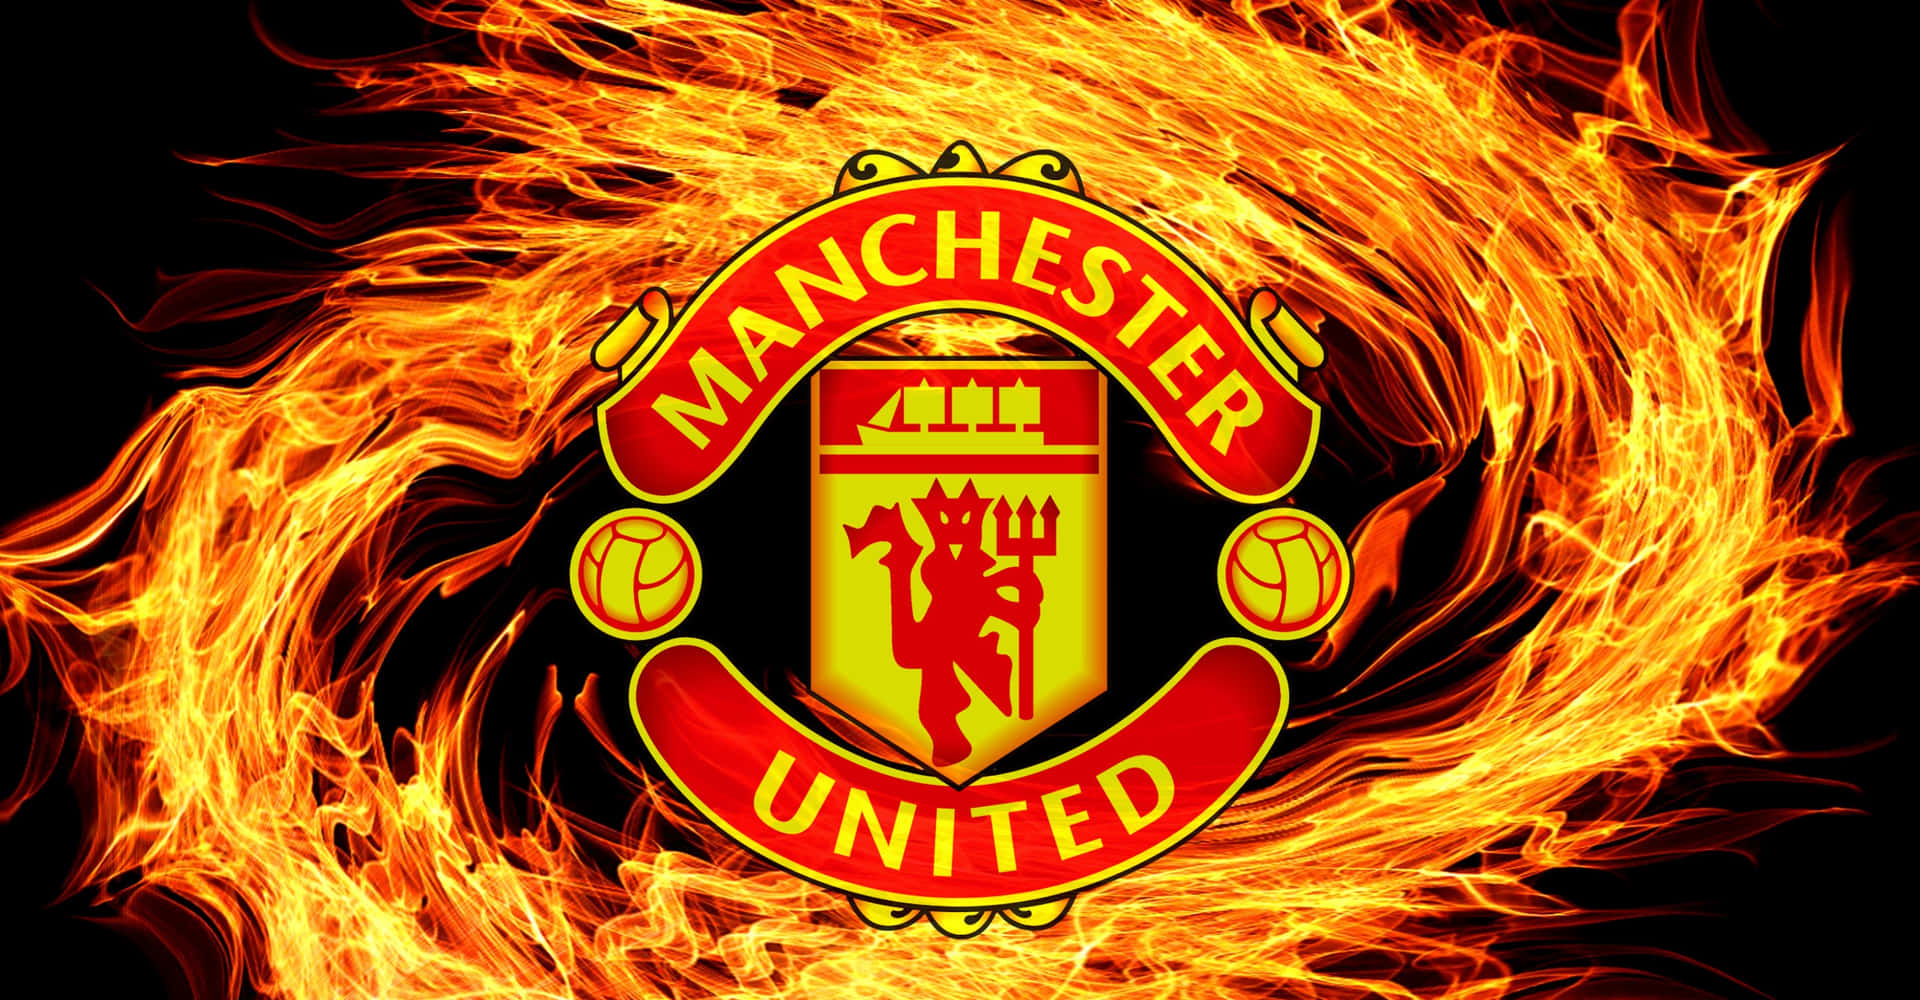 Manchester United logo i flammer Wallpaper